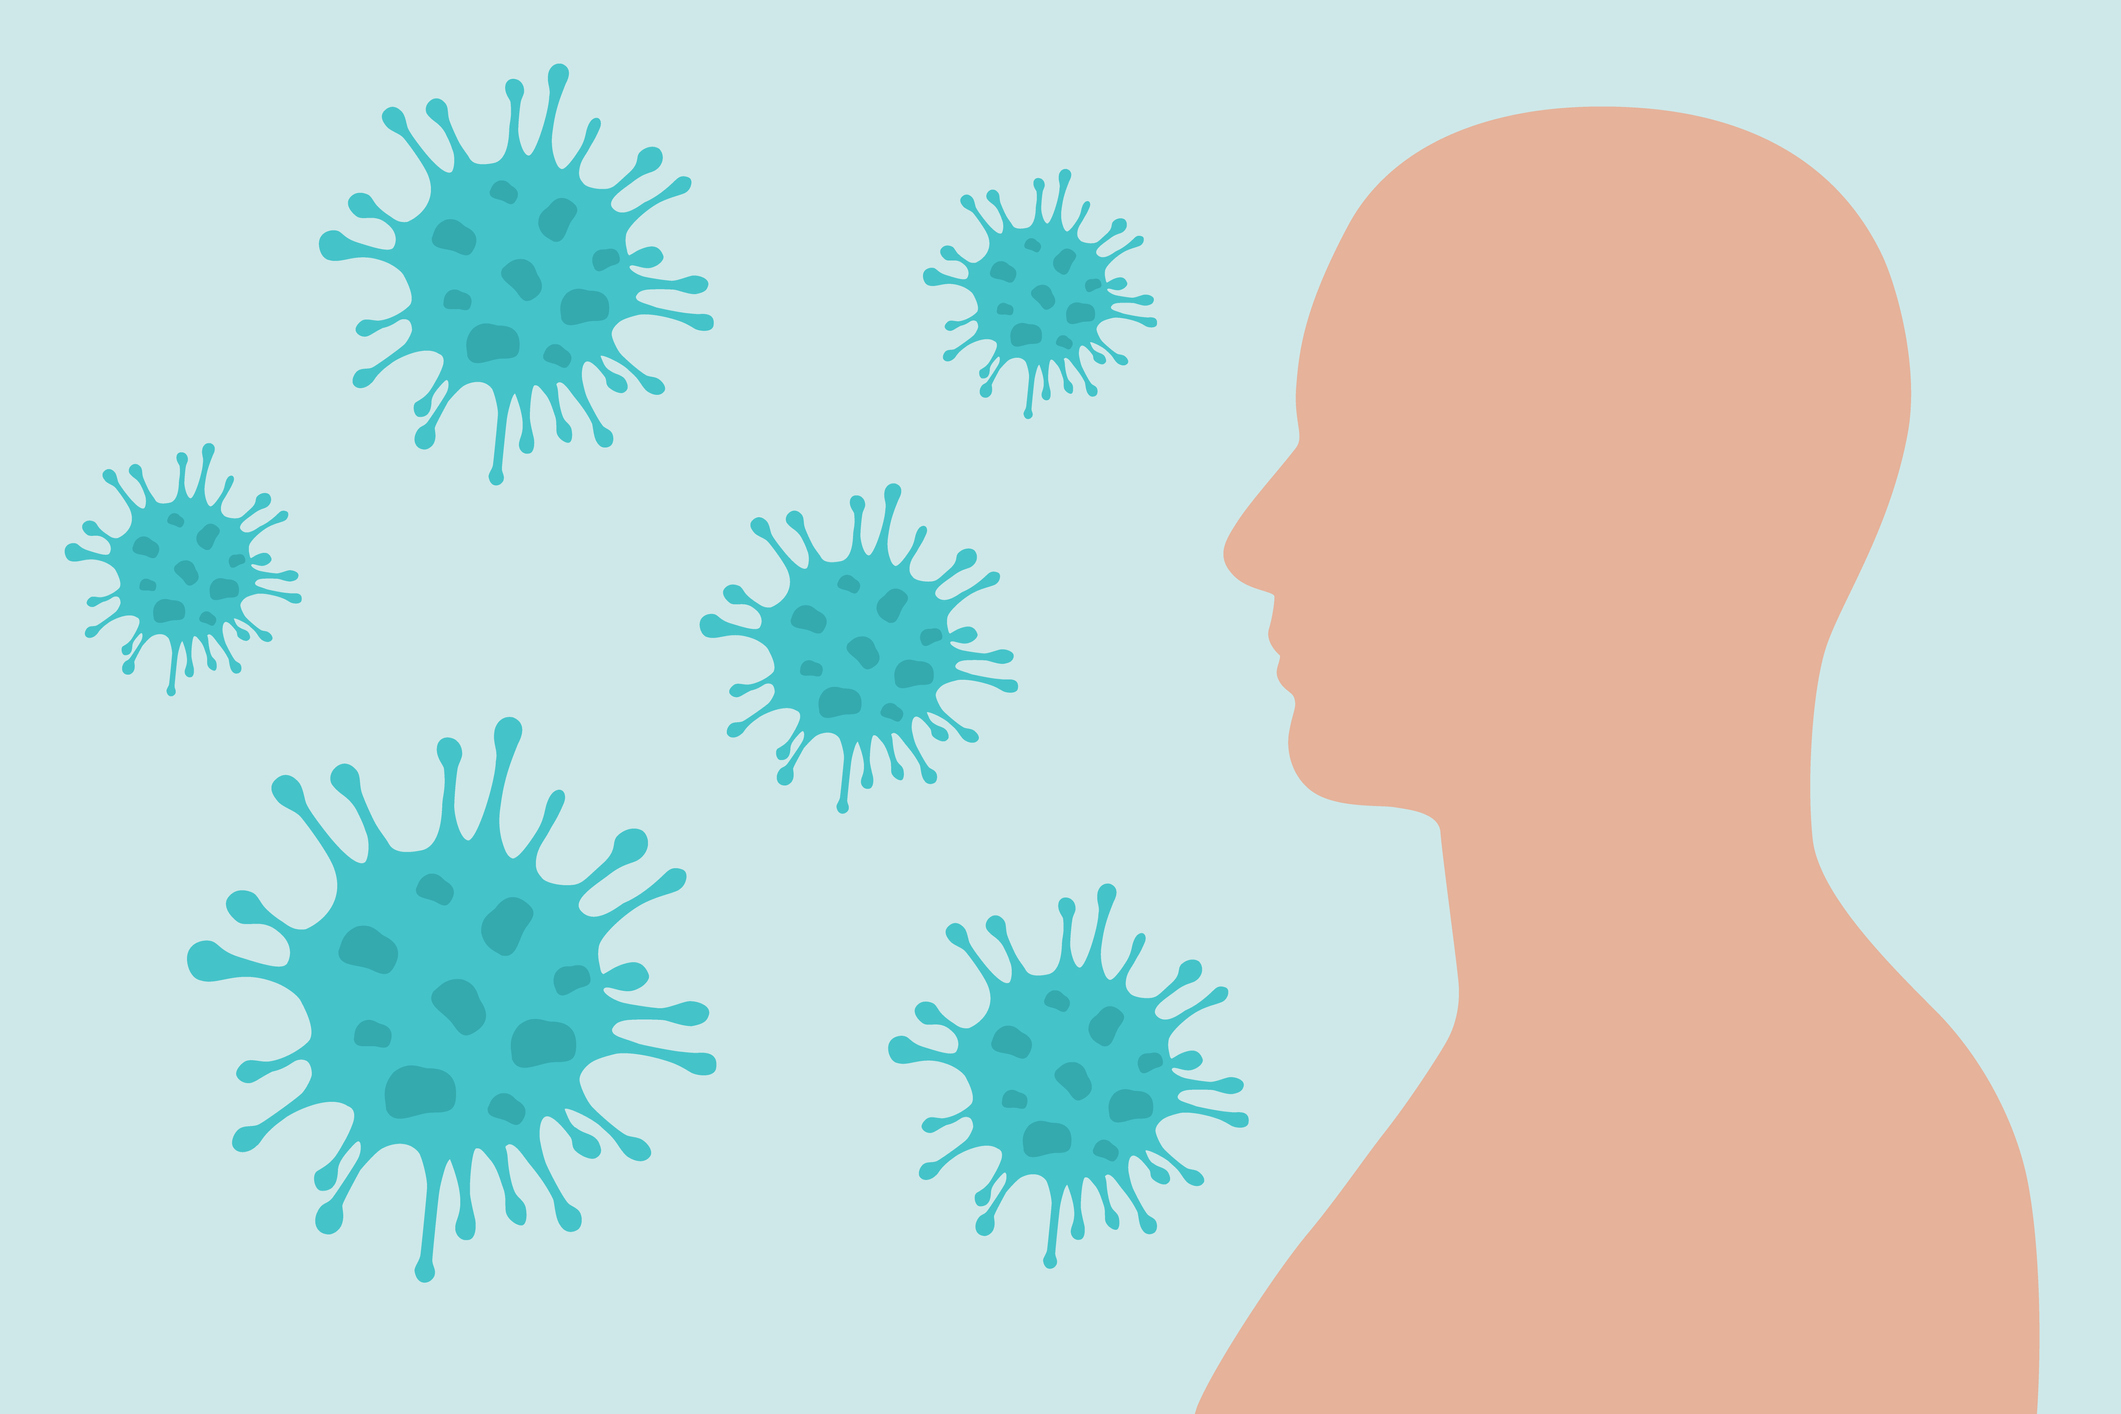 Trois ans après l'apparition du coronavirus, des rapports font état de symptômes qui ne disparaissent pas après avoir subi l'infection (Getty Images)